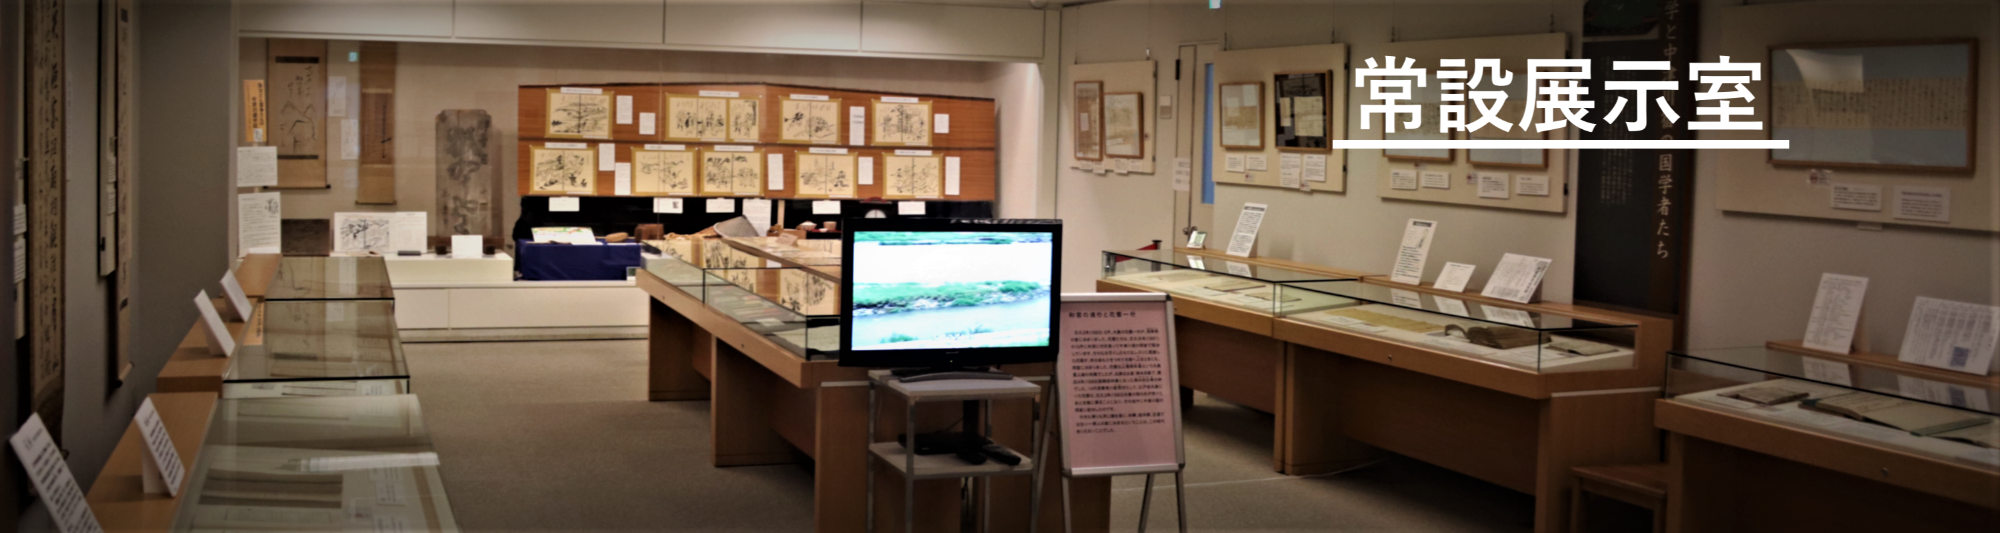 中山道歴史資料館 常設展示室